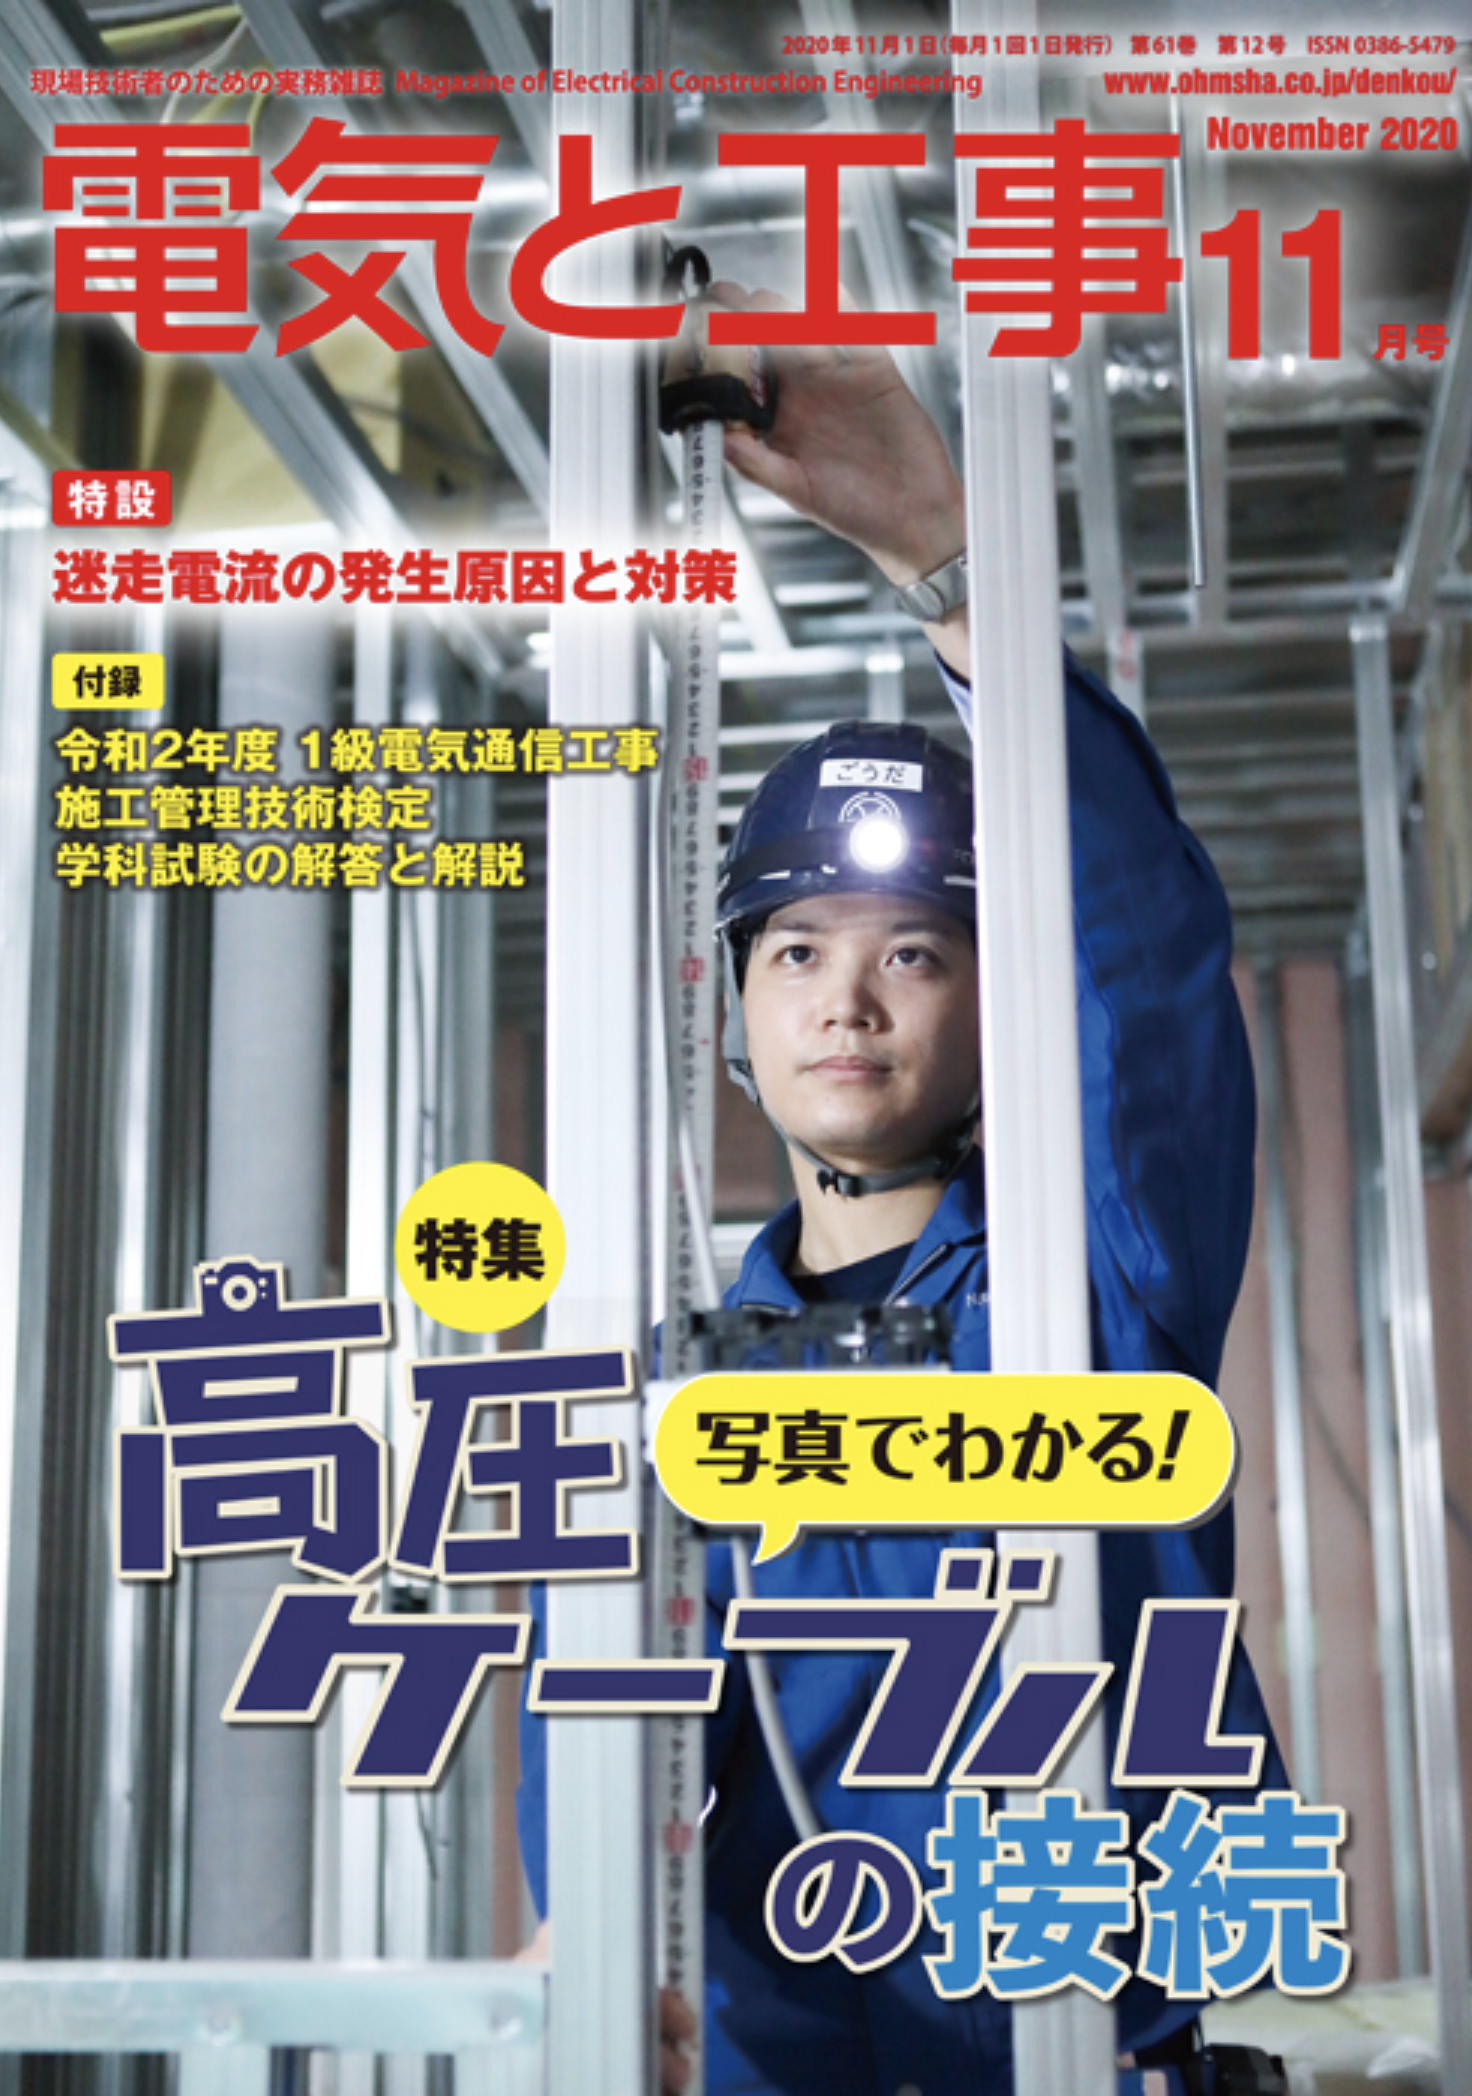 【新刊トピックス 2020年10月】電気と工事 2020年11月号 (第61巻第12号通巻806号)の画像